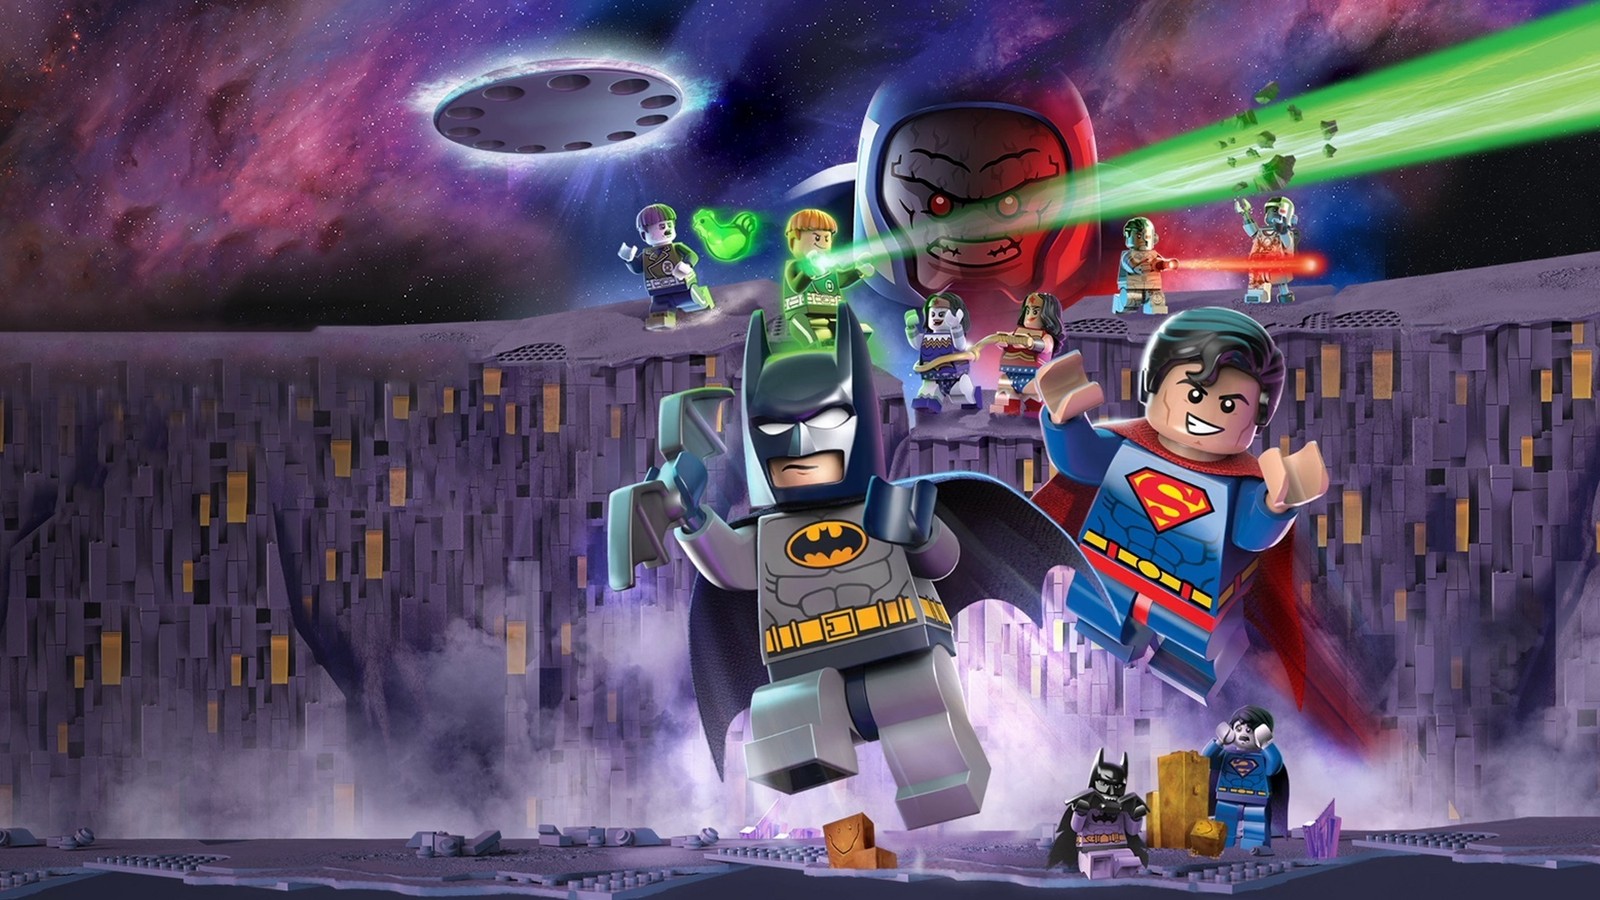 Lego DC Comics Super Heroes: Justice League Vs. Bizarro Leag HD wallpapers, Desktop wallpaper - most viewed